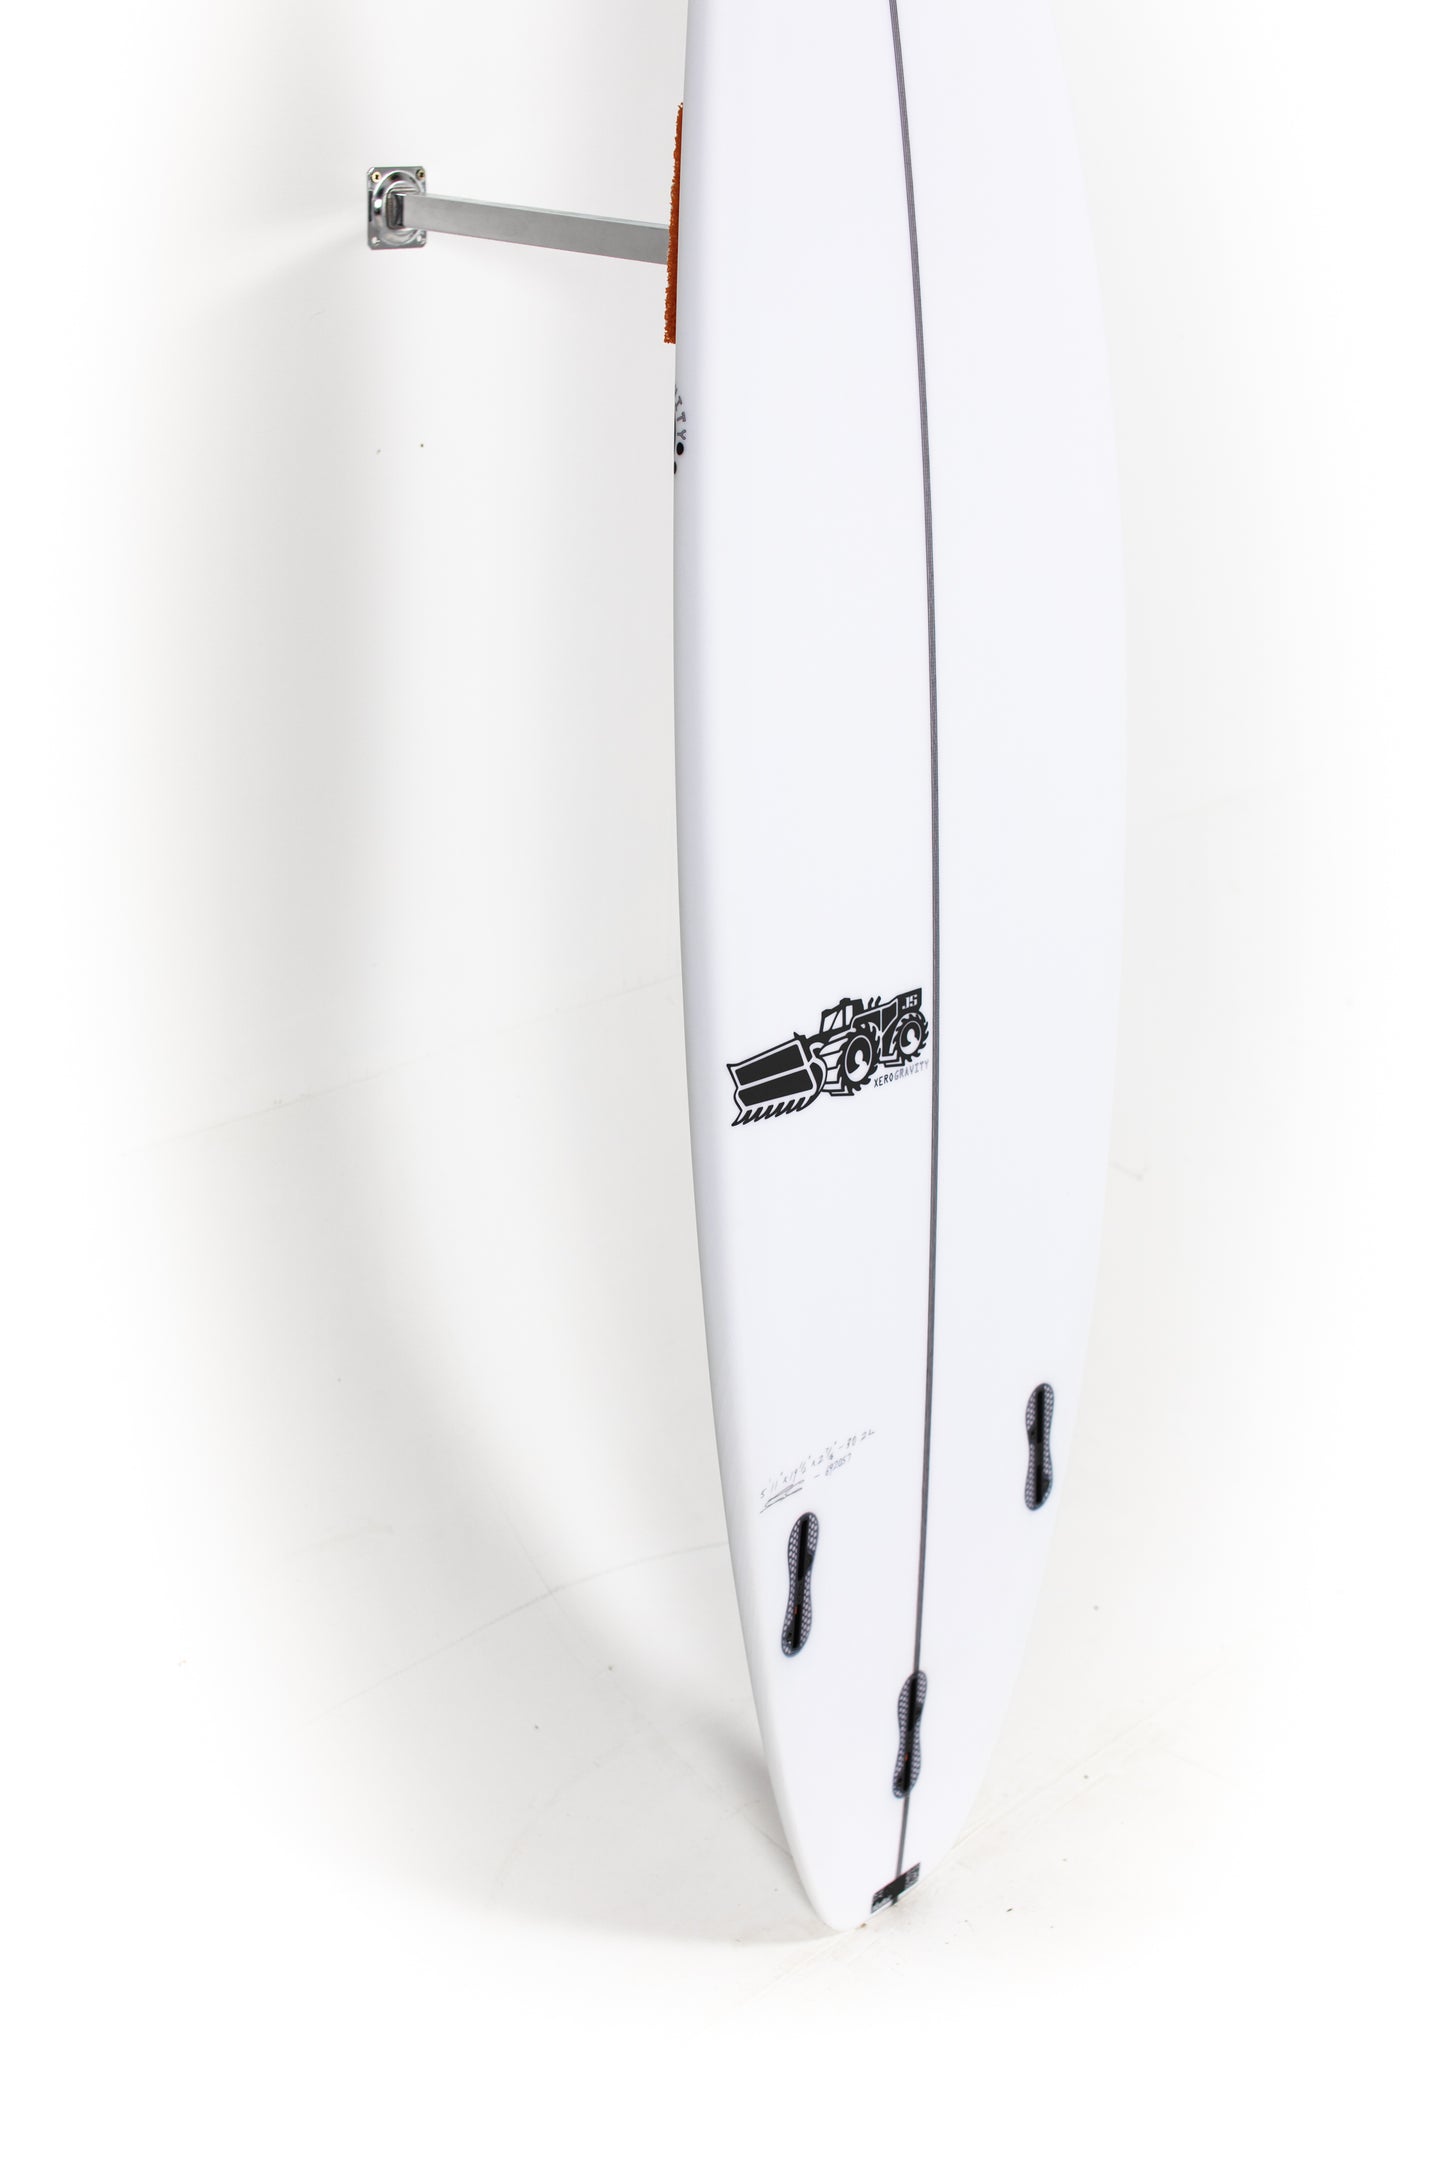 JS Surfboards - XERO GRAVITY - 5'11